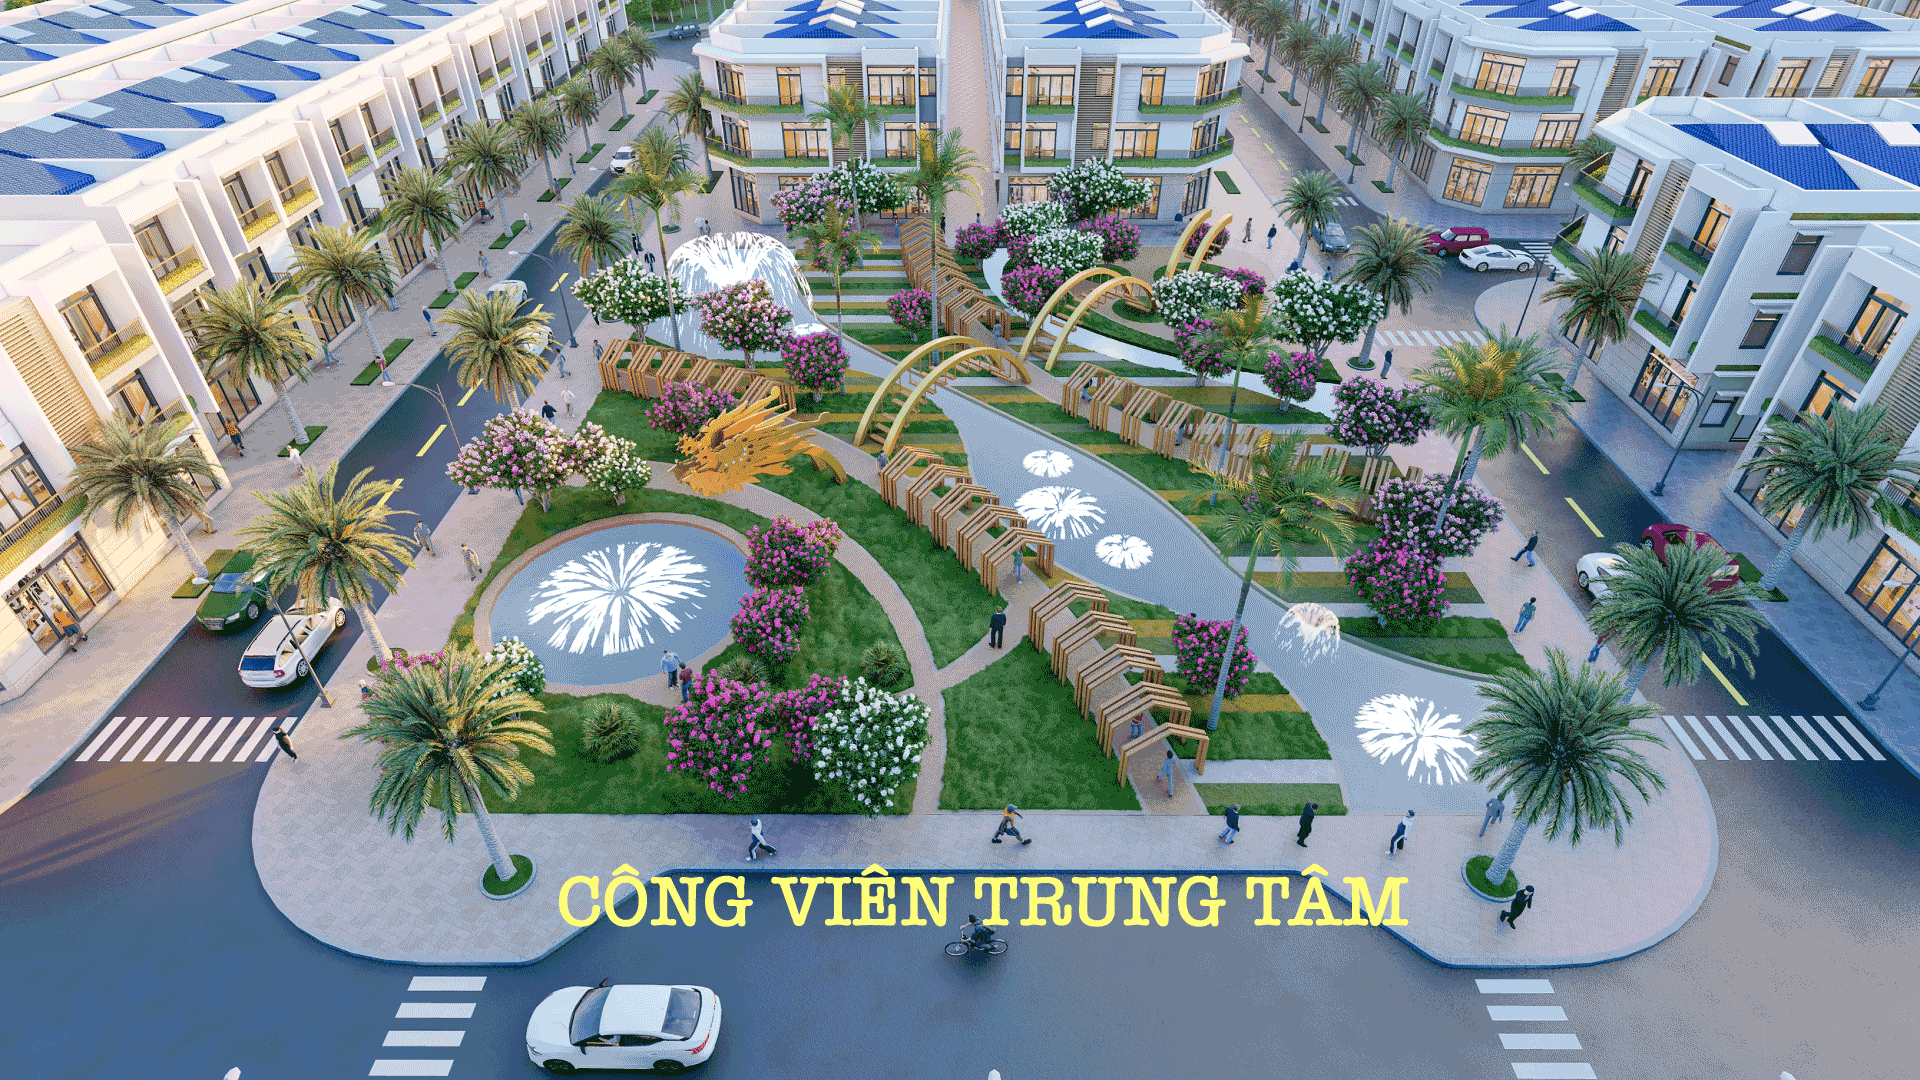 Cong Vien Du An Long Hoi Nhon Trach.1